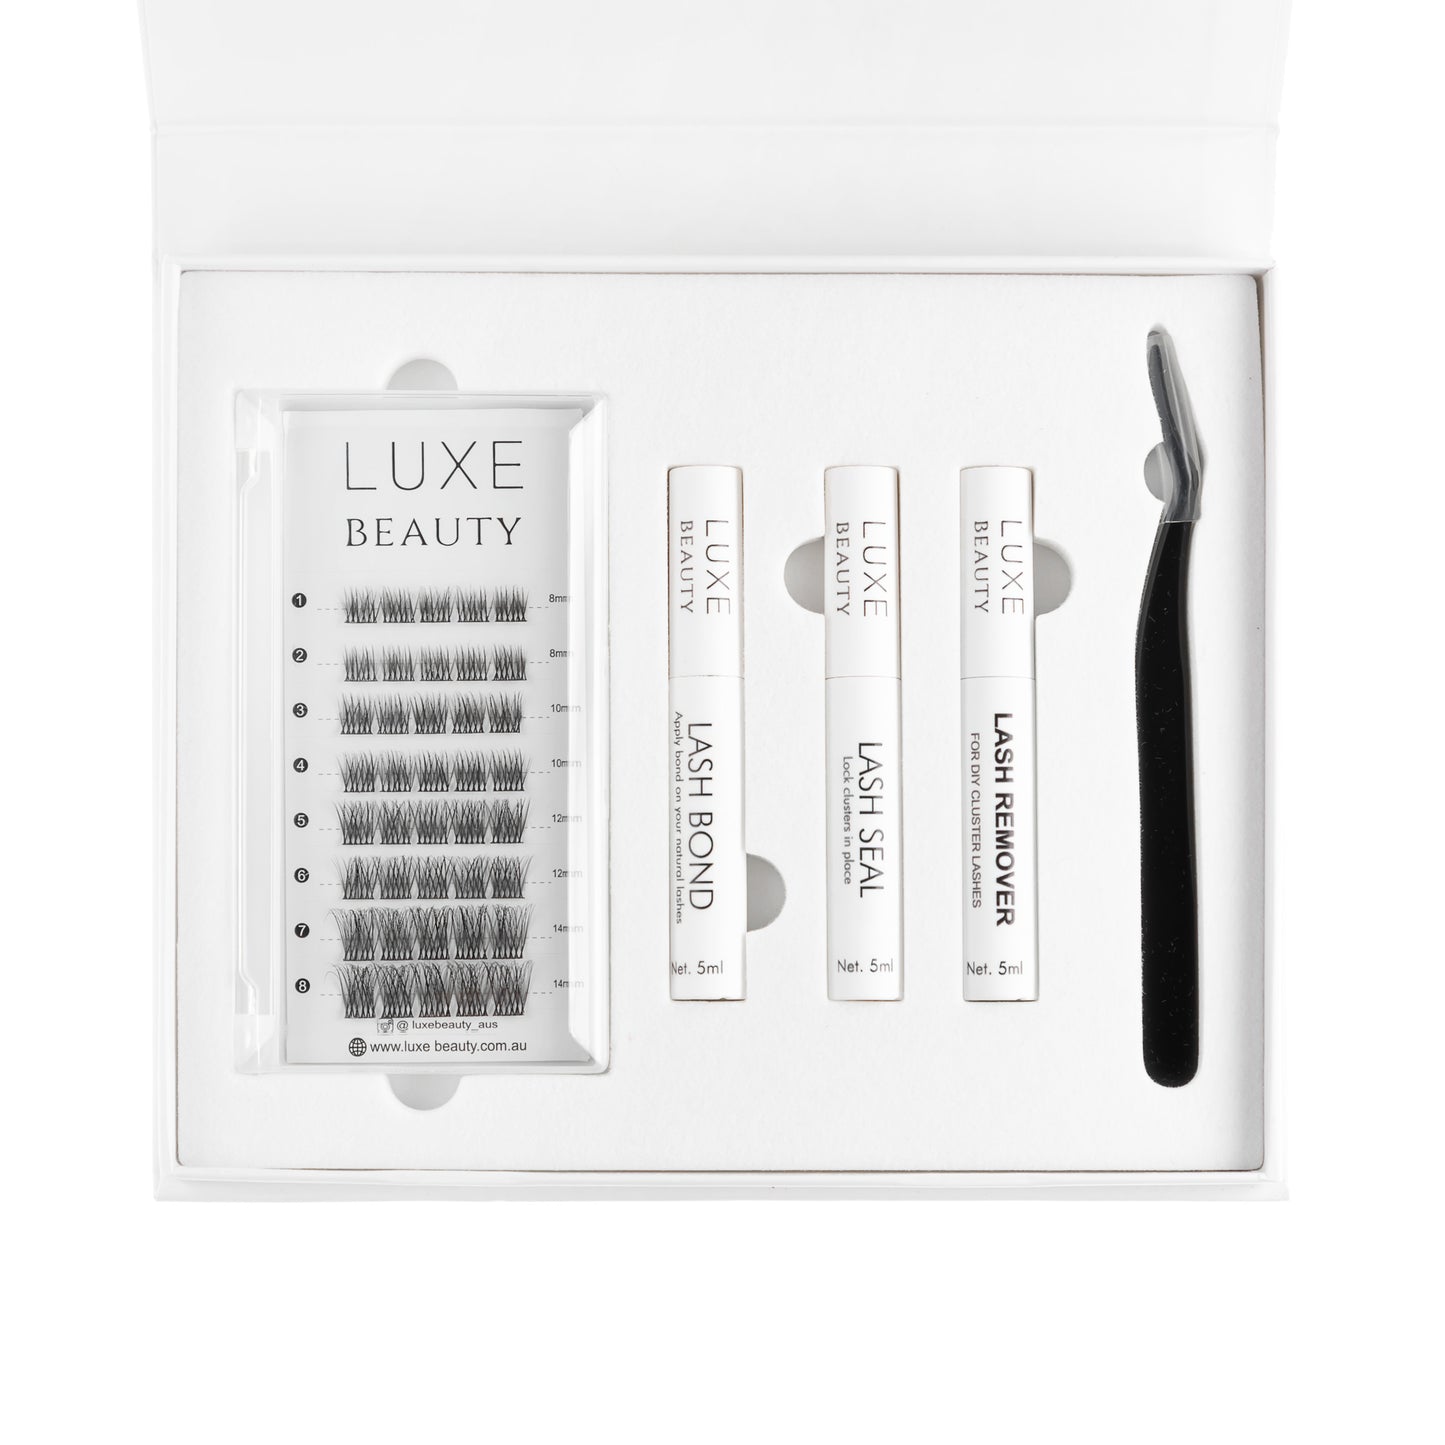 Luxe DIY Eyelash Extensions Kit